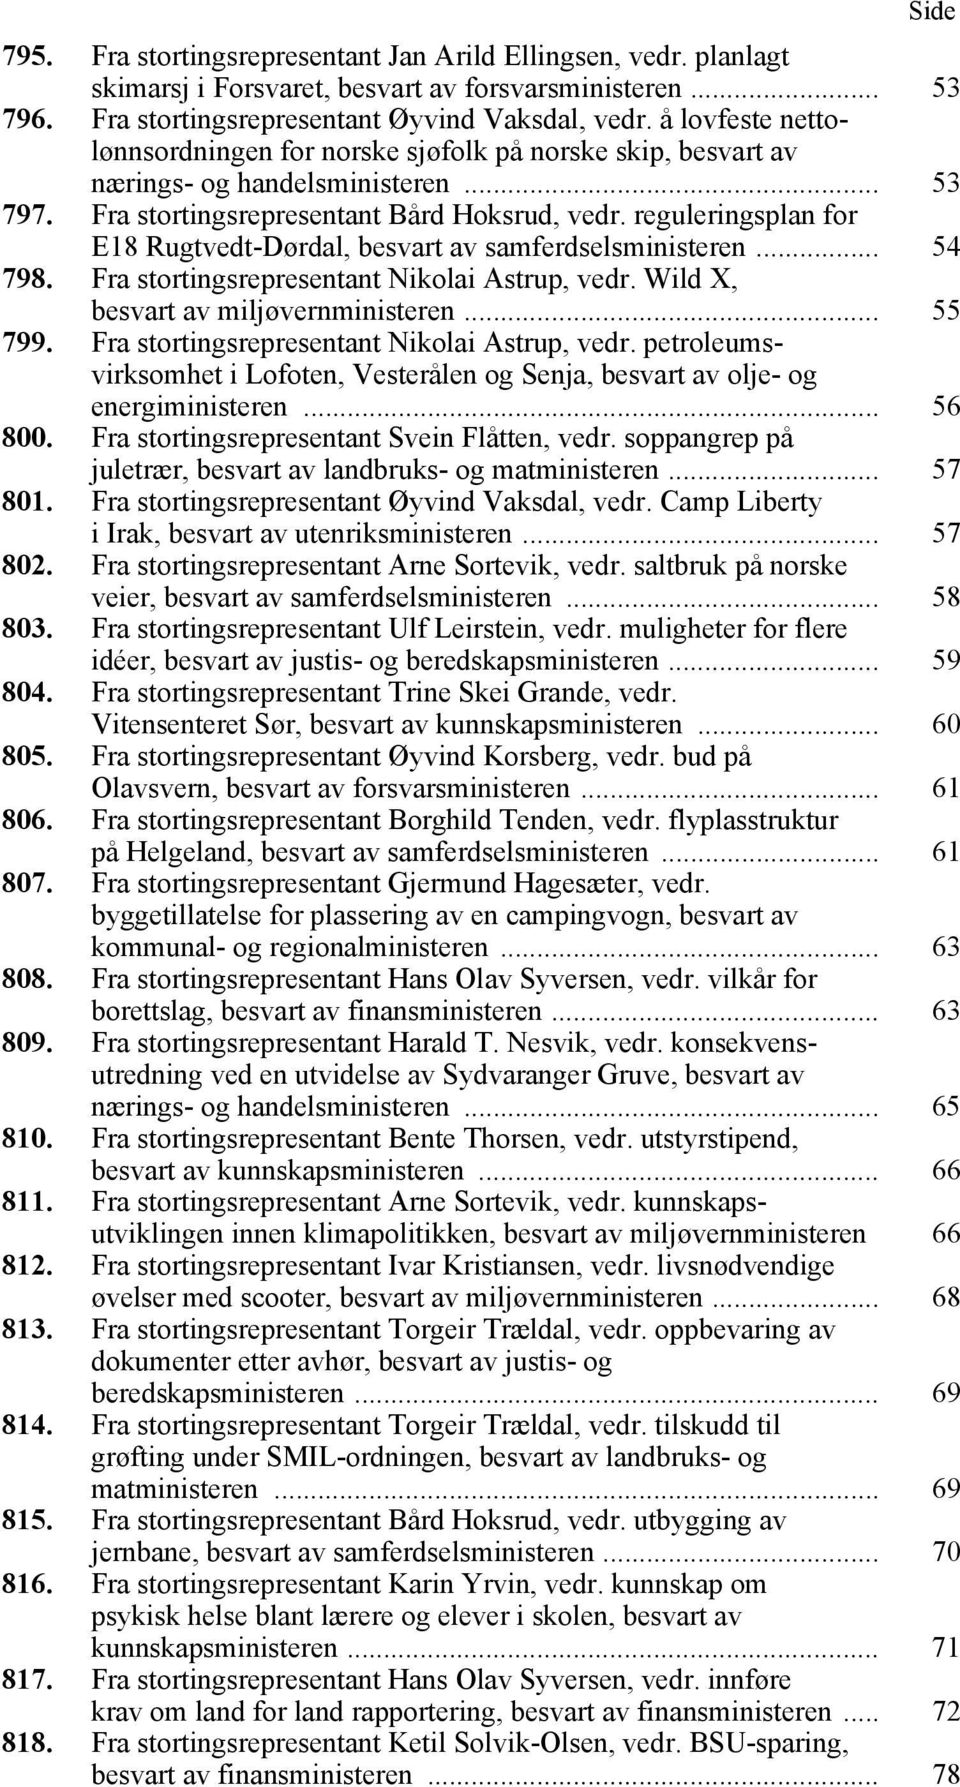 reguleringsplan for E18 Rugtvedt-Dørdal, besvart av samferdselsministeren... 54 798. Fra stortingsrepresentant Nikolai Astrup, vedr. Wild X, besvart av miljøvernministeren... 55 799.